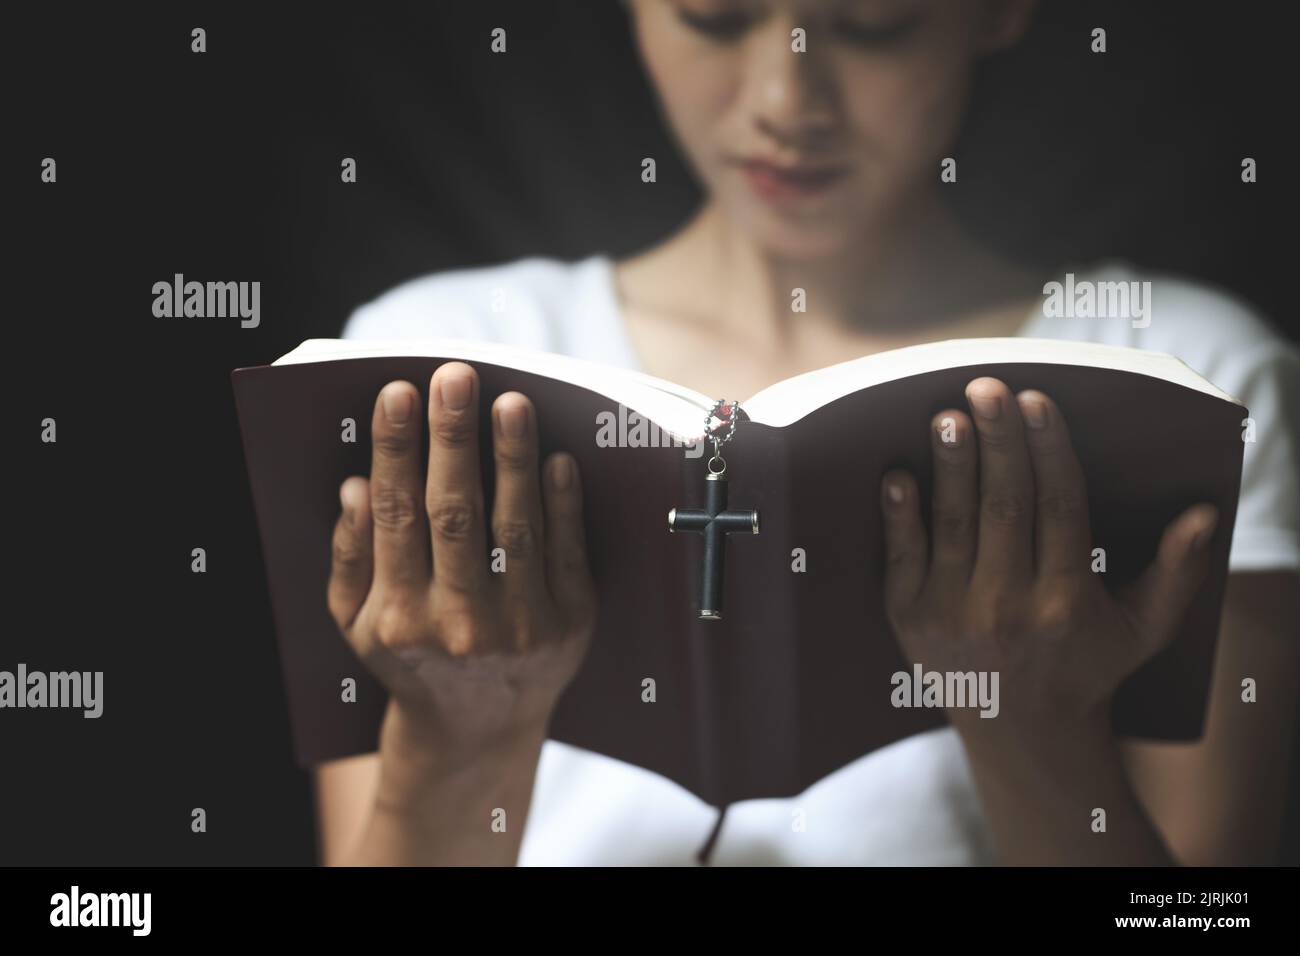 Die Schrift und das Kreuz werden von einer ehrlichen und christlichen jungen Frau gelesen, um Ideen zu beten, zu glauben, zu glauben, zu beten, zu wünschen. Stockfoto